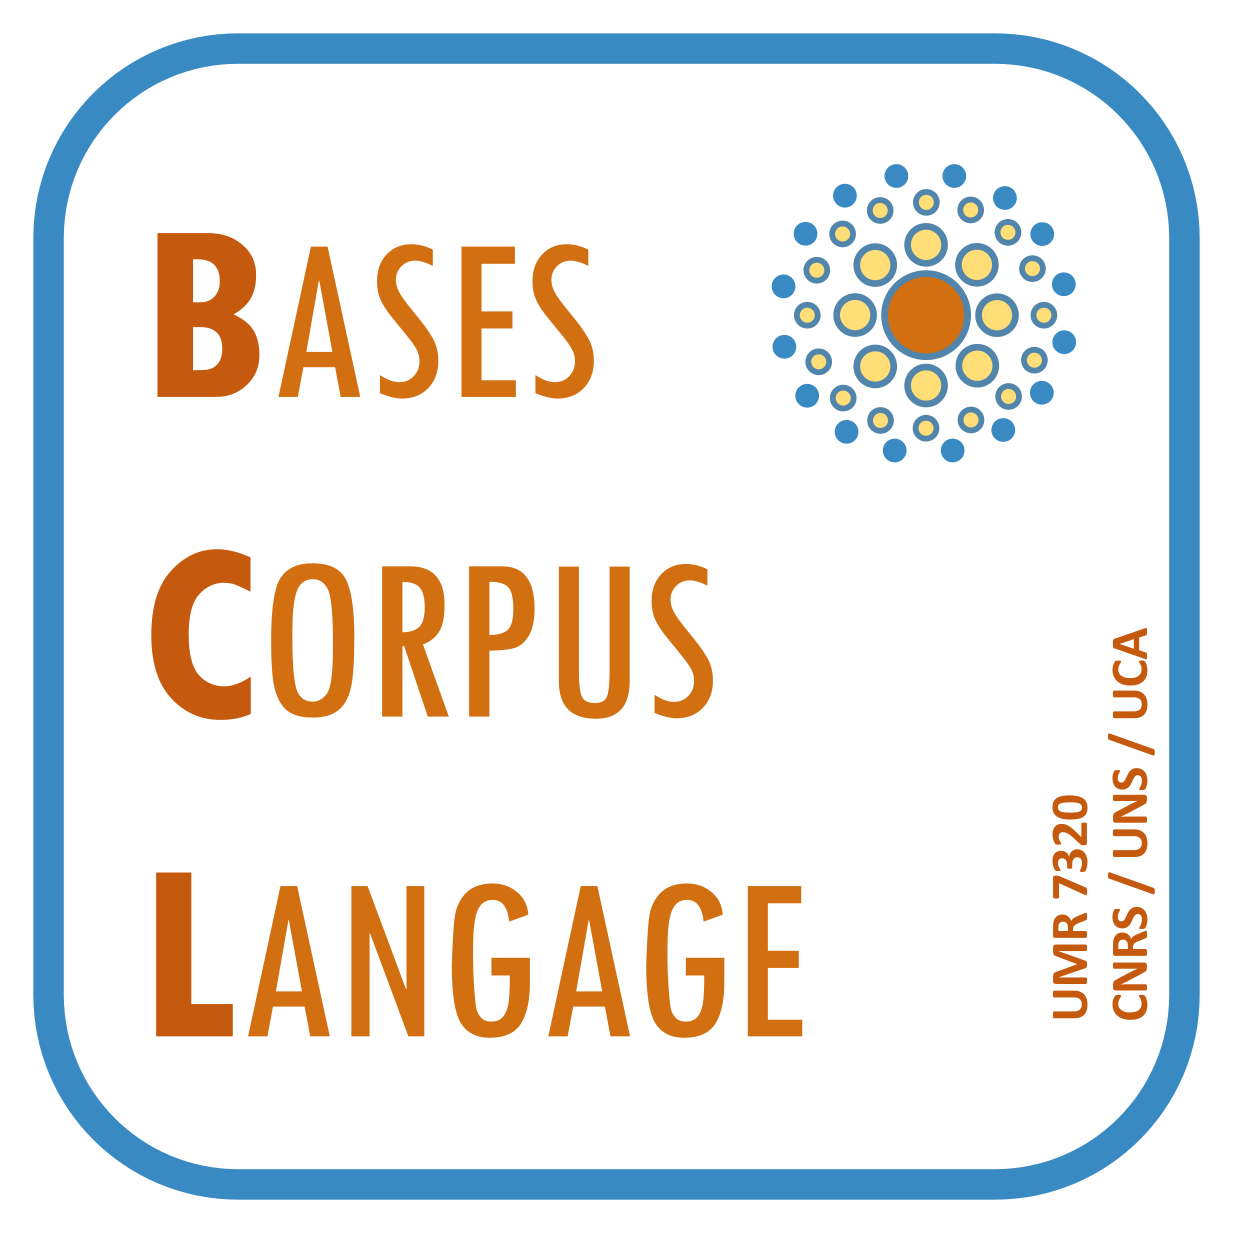 Bases Corpus Langage